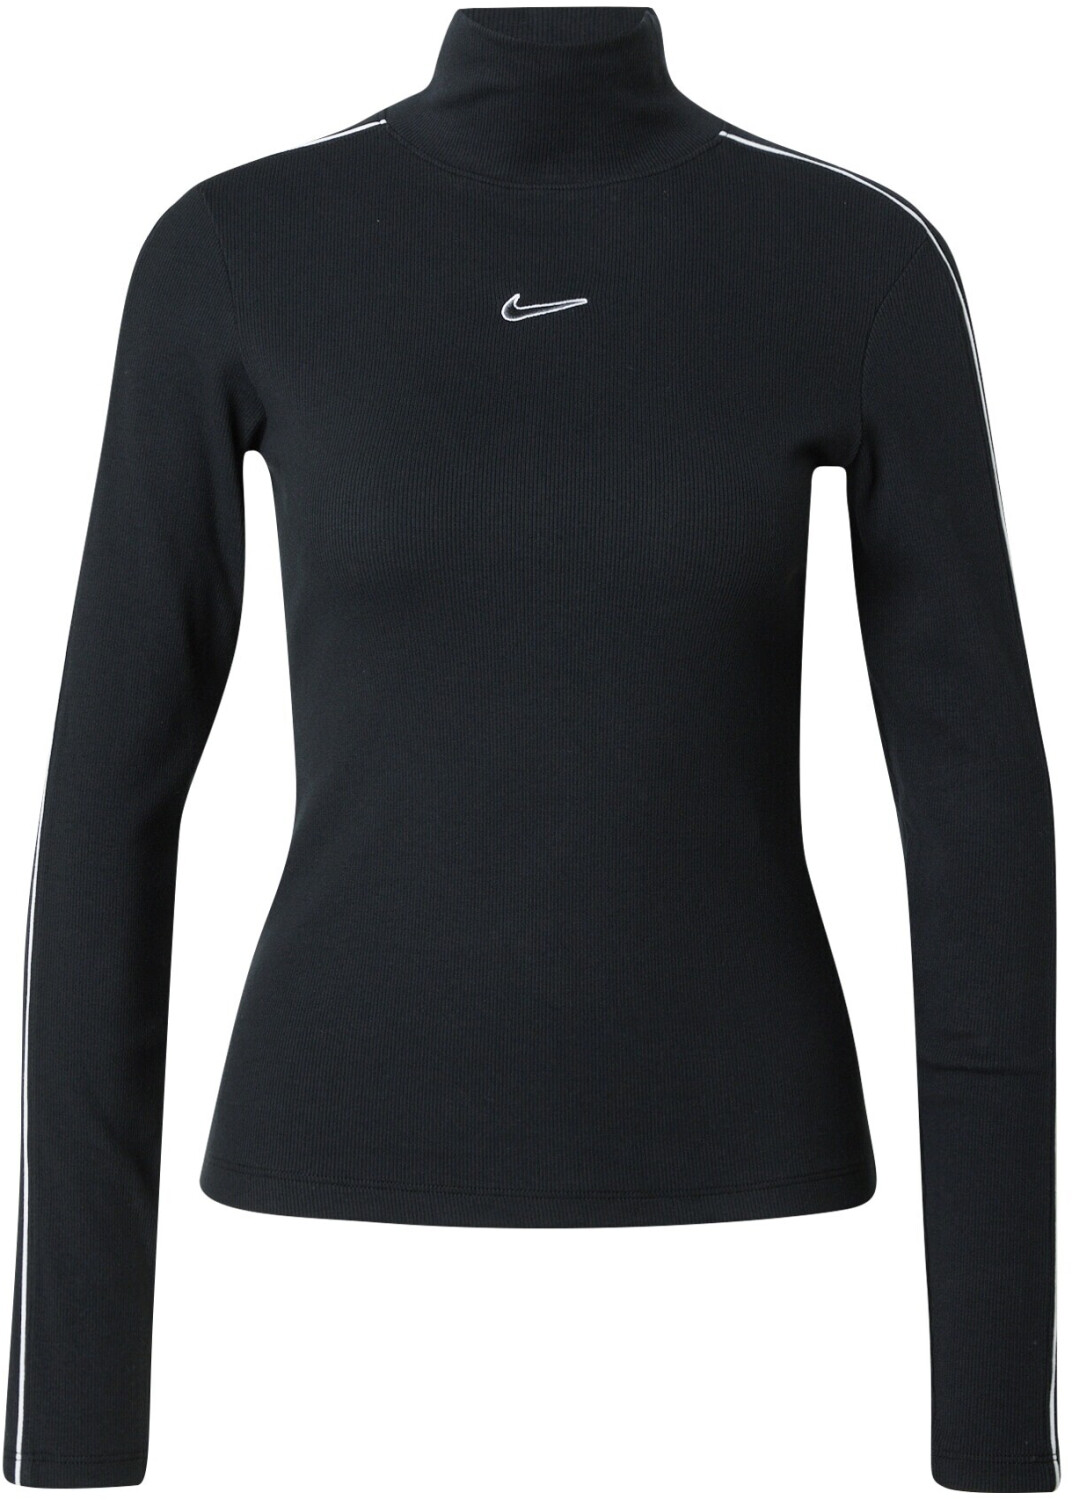 Image of Nike Longsleeve Top (FV4990) black